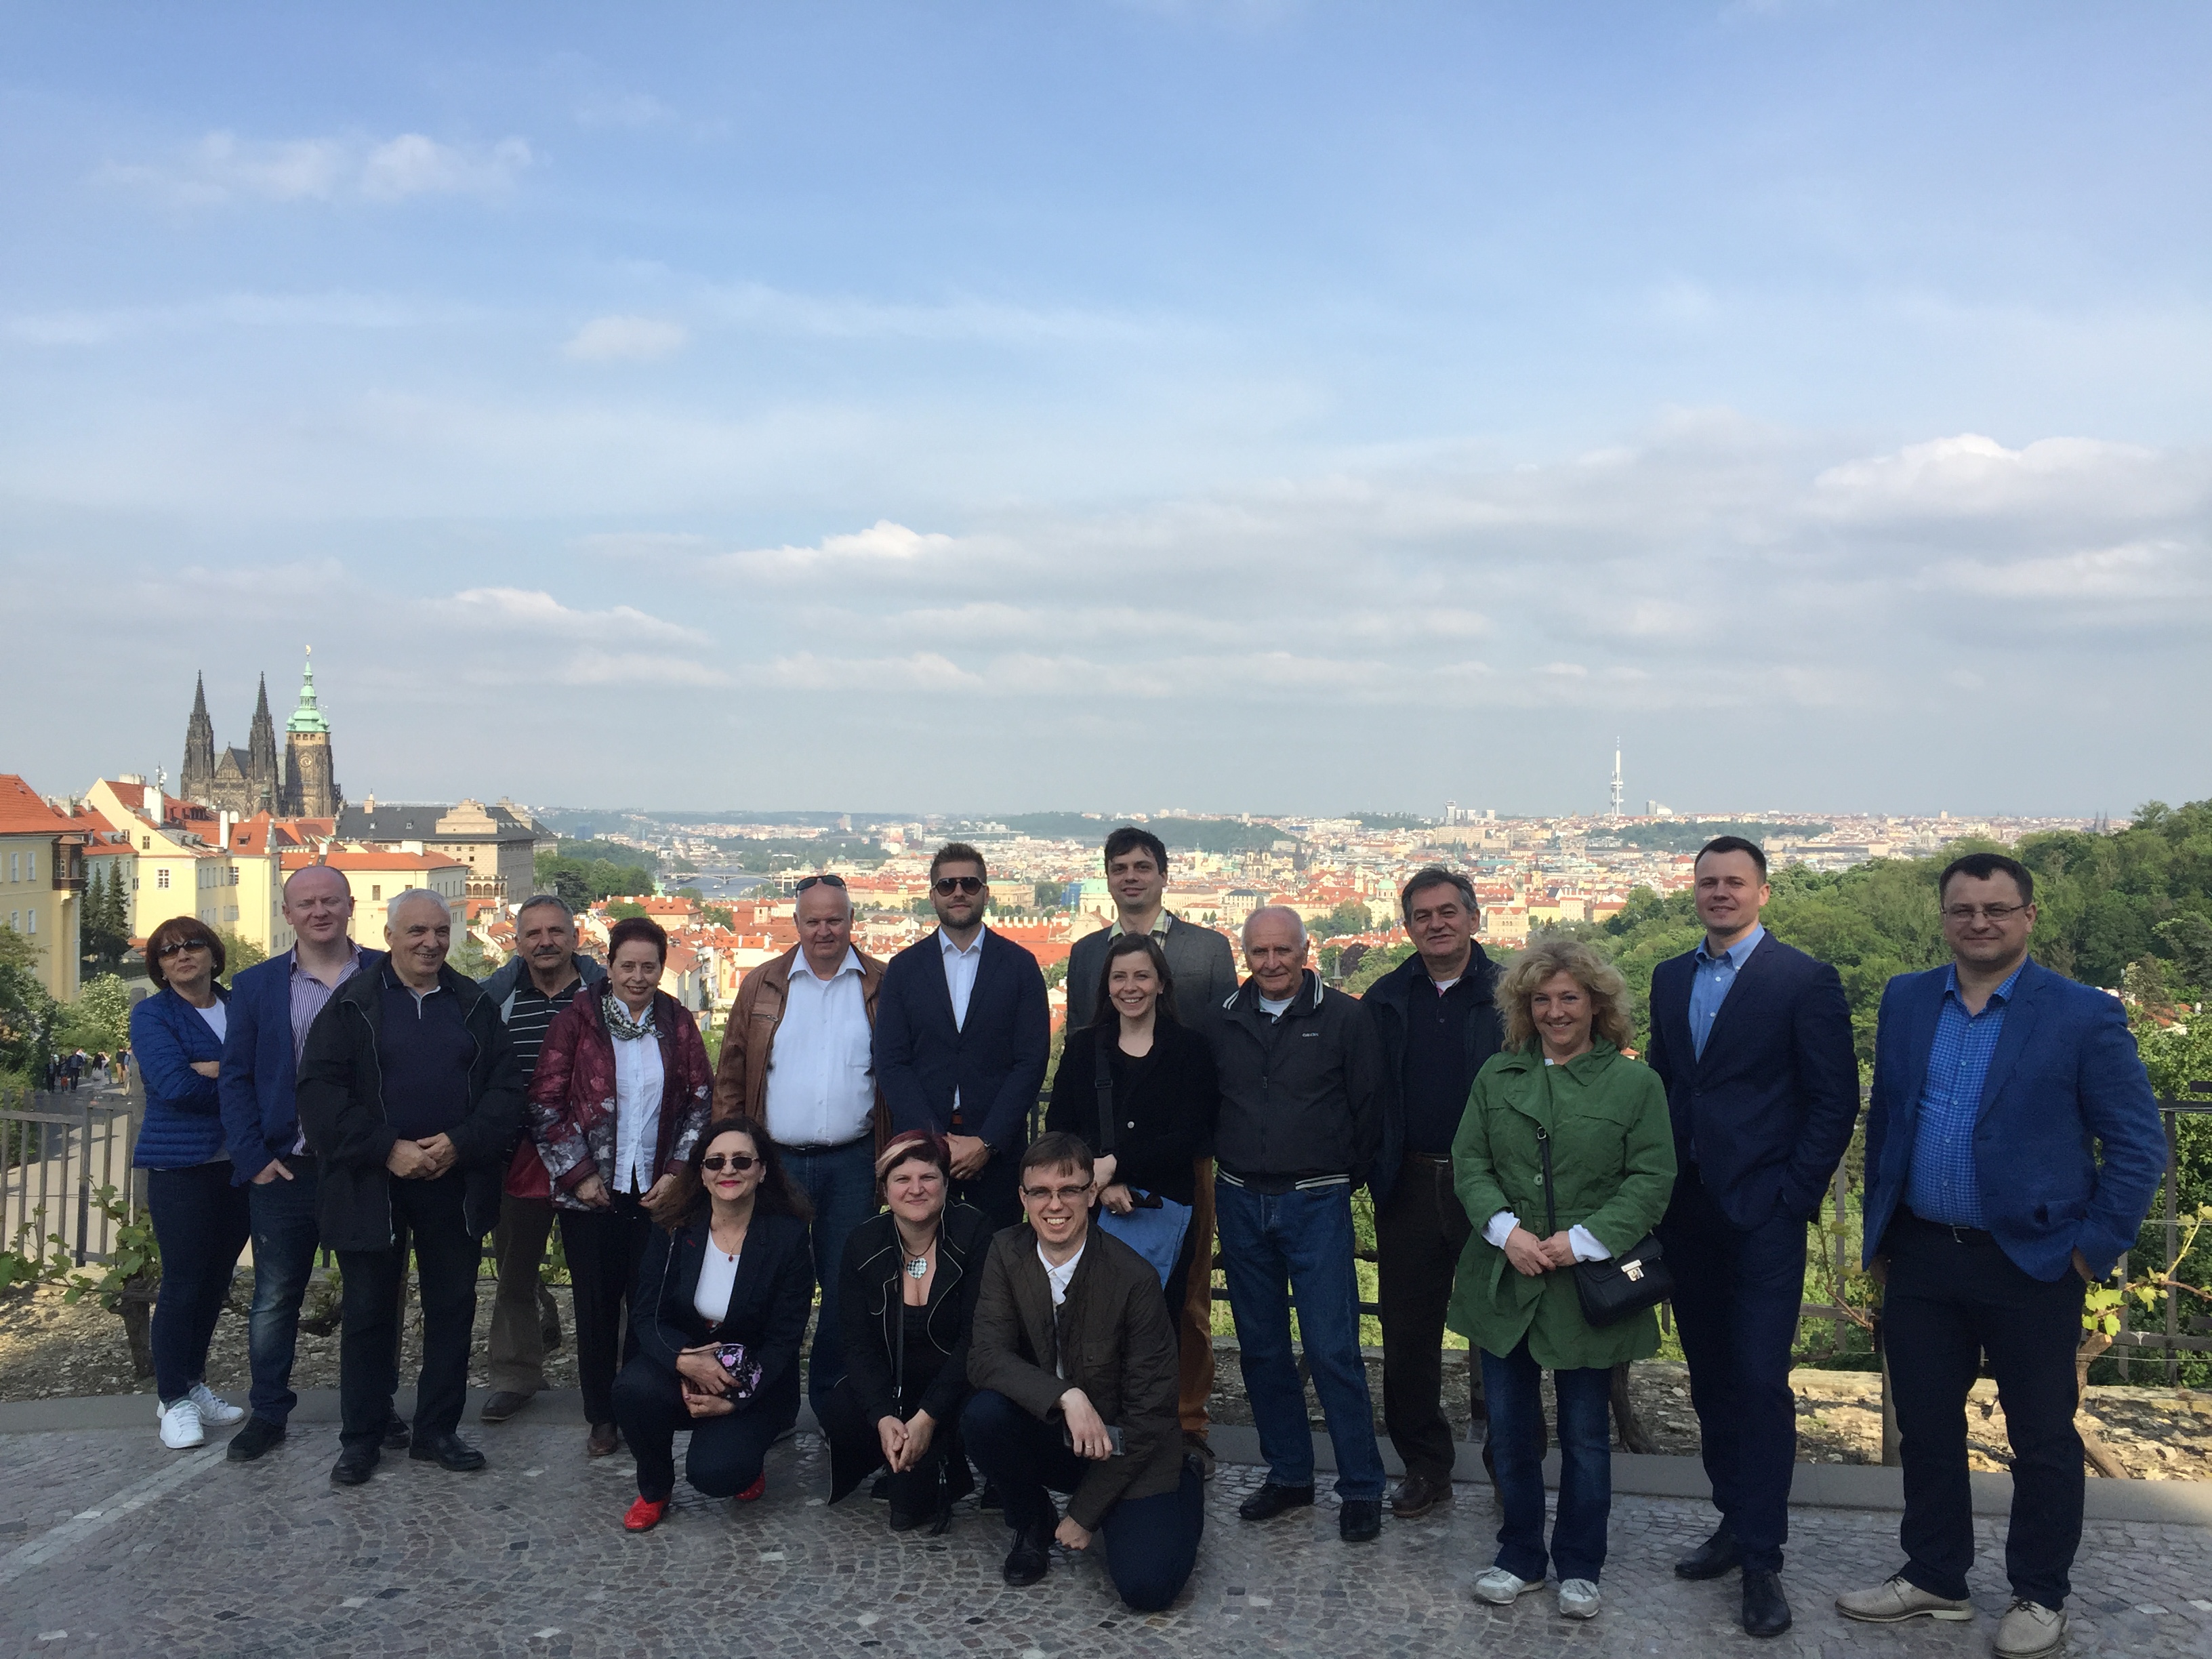 EE Conference Prague 2018